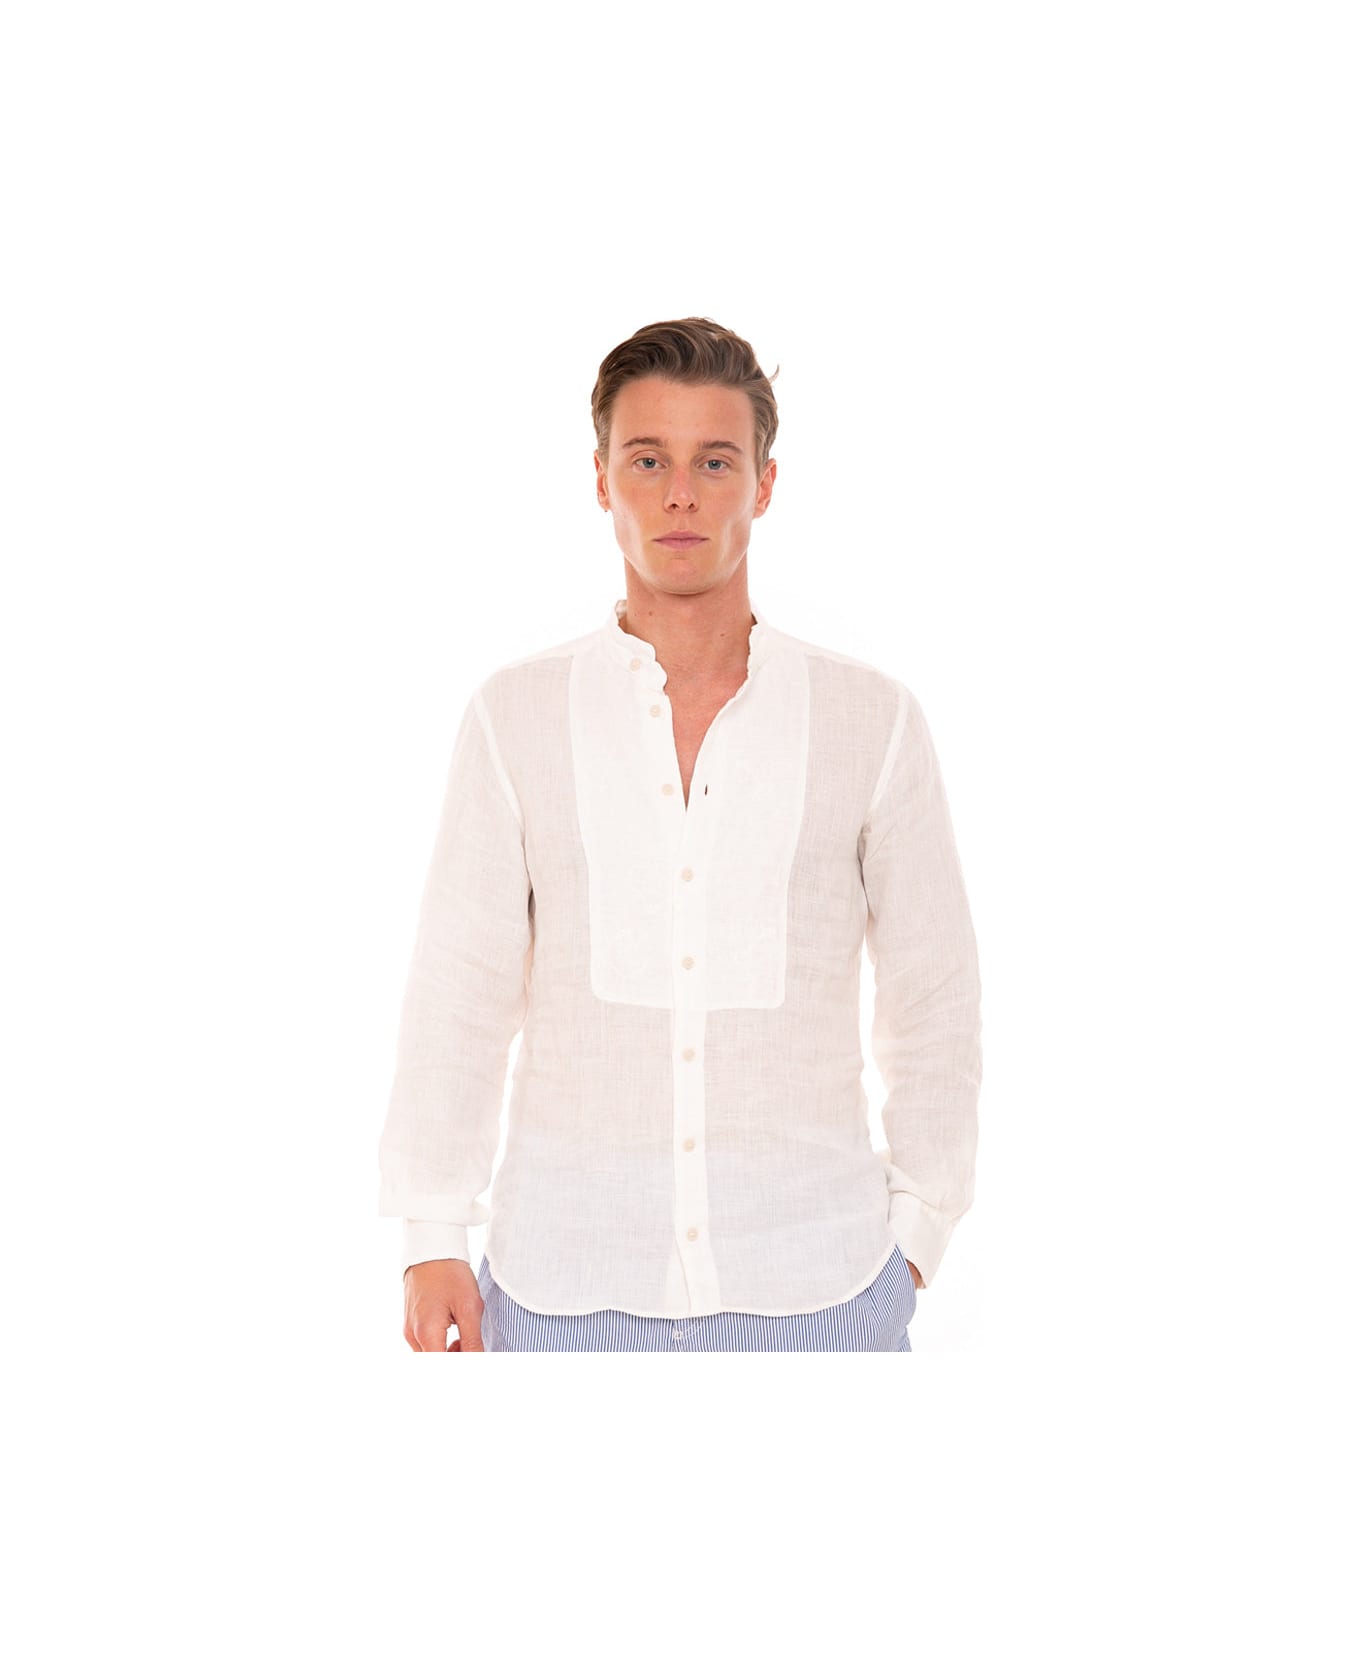 MC2 Saint Barth Off White Embroidered Man Linen Shirt - WHITE シャツ